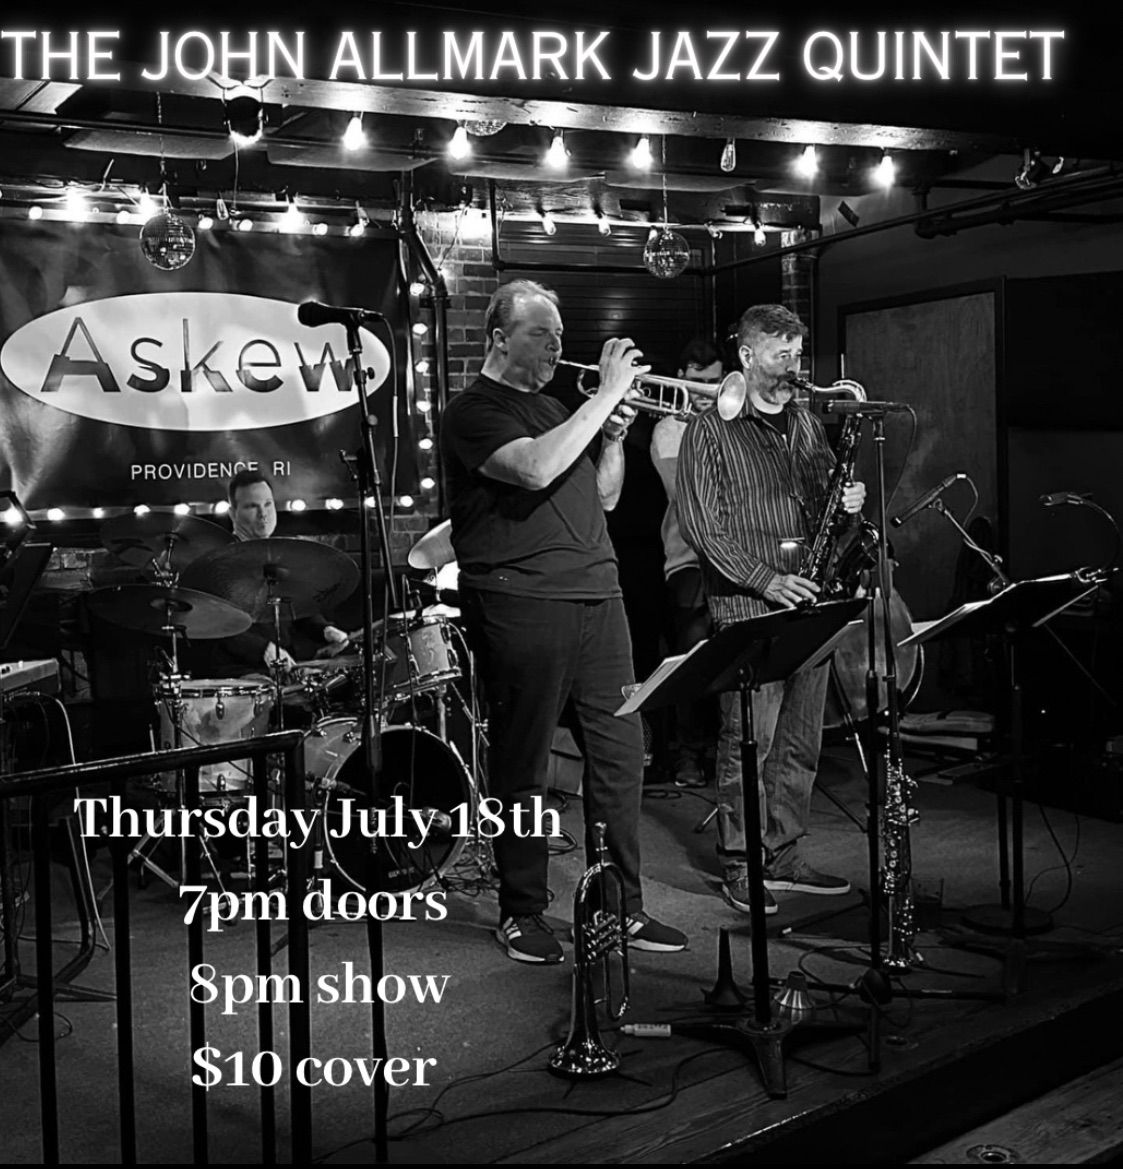 The John Allmark Jazz Quintet at Askew